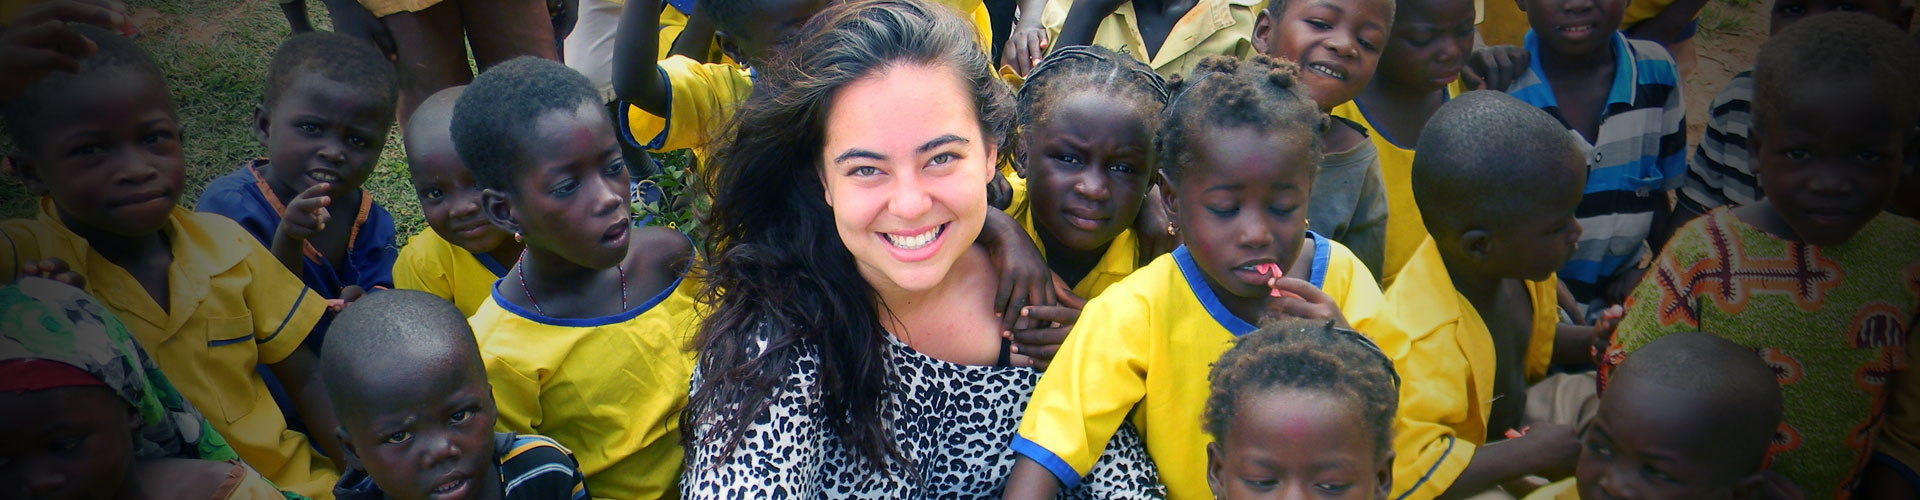 Programma di volontariato per orfanotrofi in Ghana